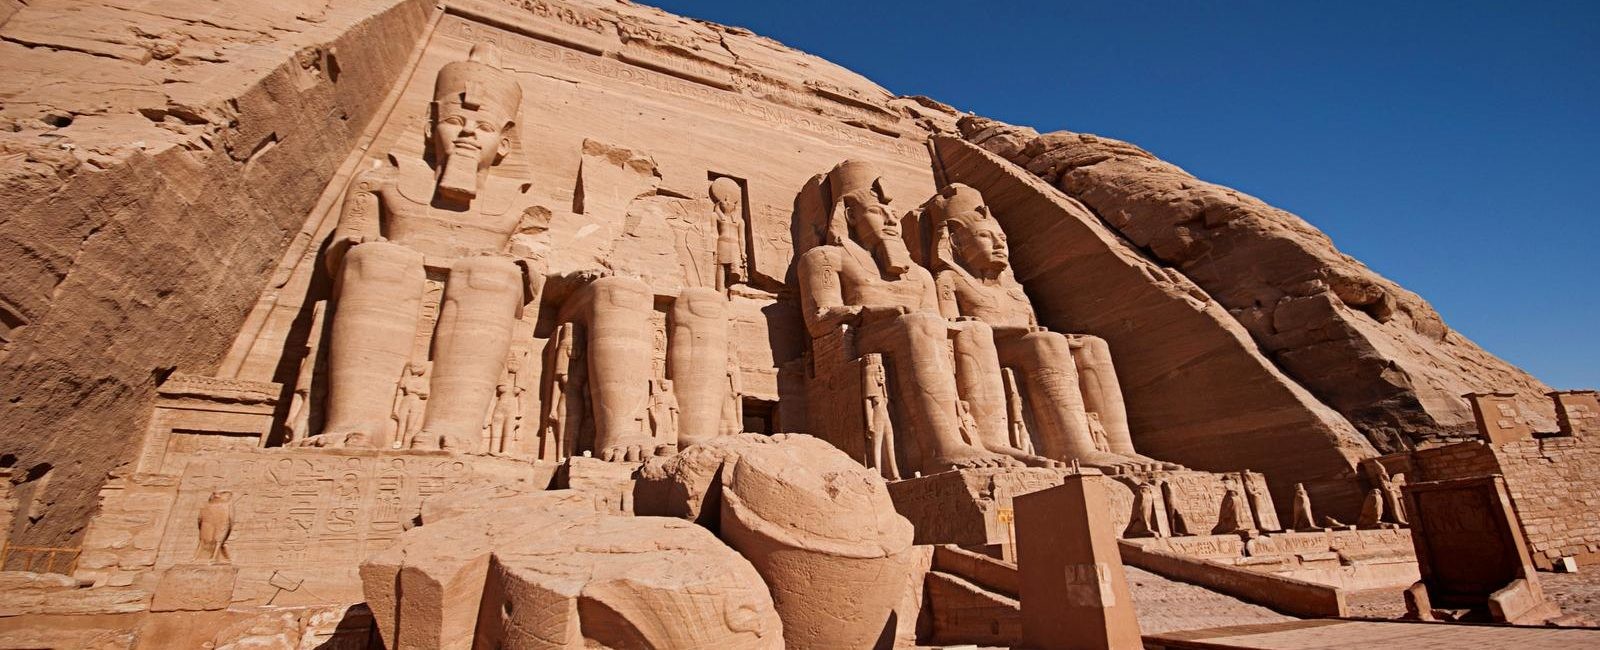 Dvoudenní výlet Asuán, Abu Simbel, Kom Ombo a Edfu z Hurghady